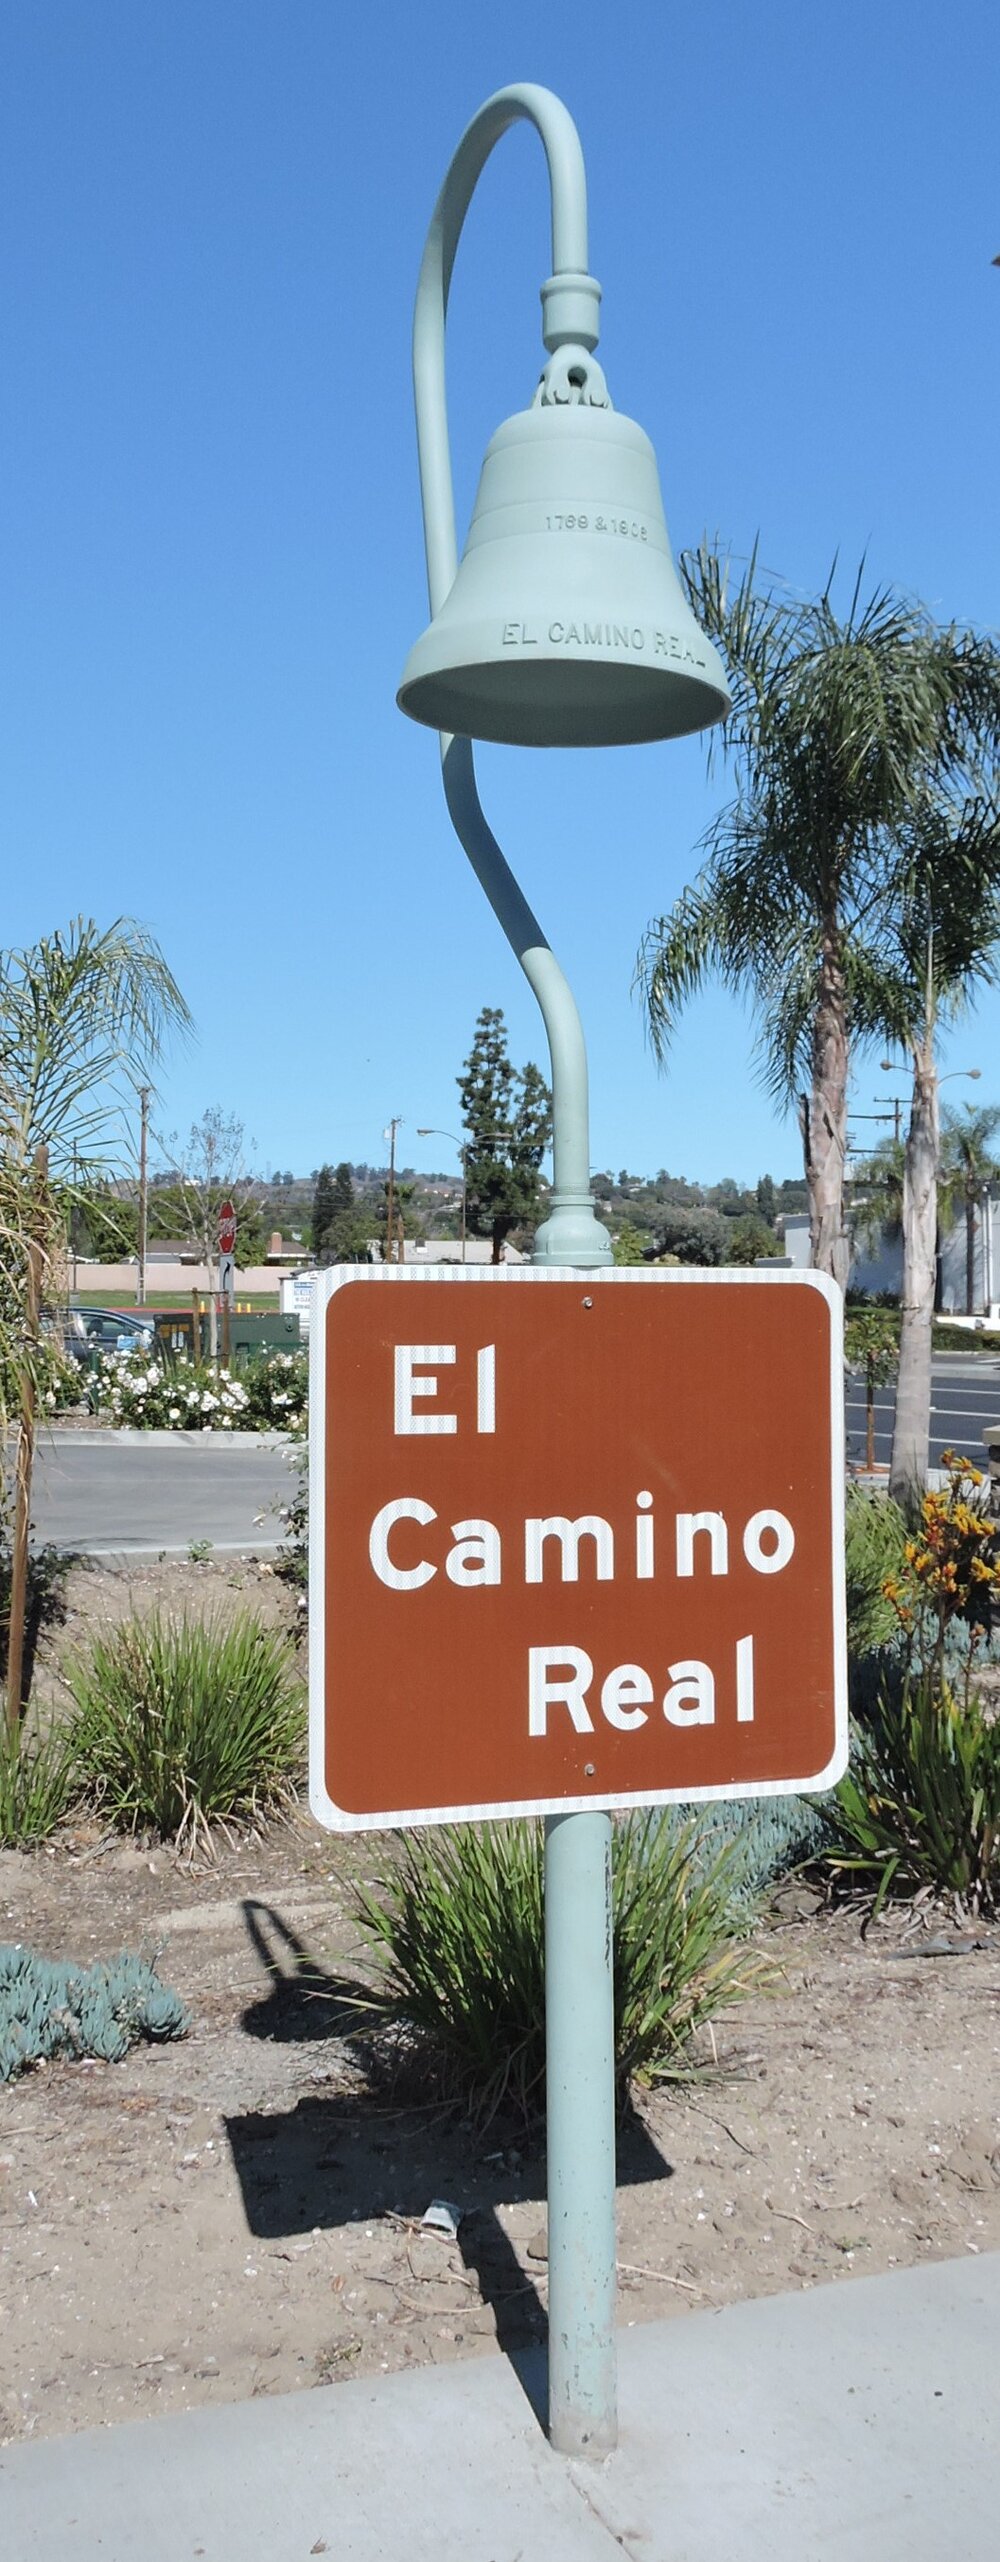 El Camino Real Marker, Whittier Boulevard and Hacienda Road, La Habra